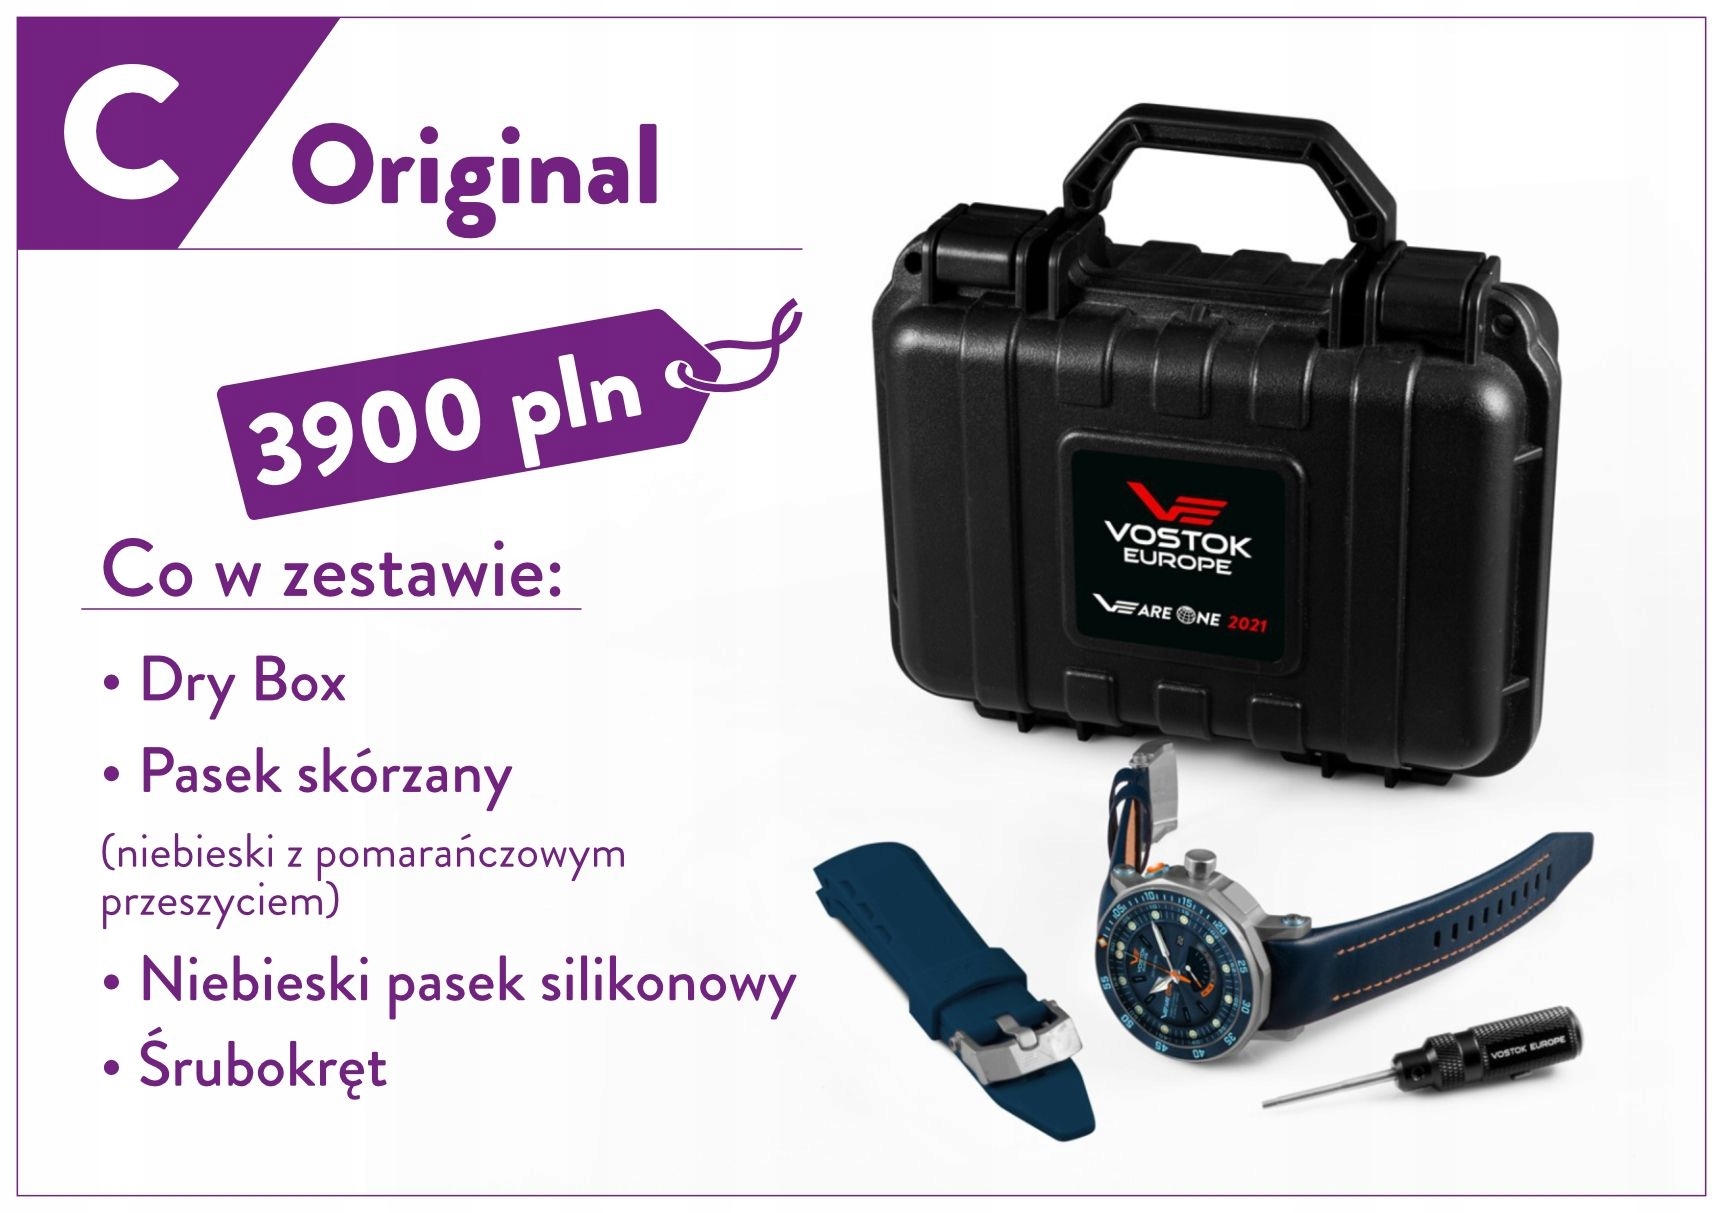 Zegarek Vostok Limited Edition Vearreone 2021 Polska Edycja